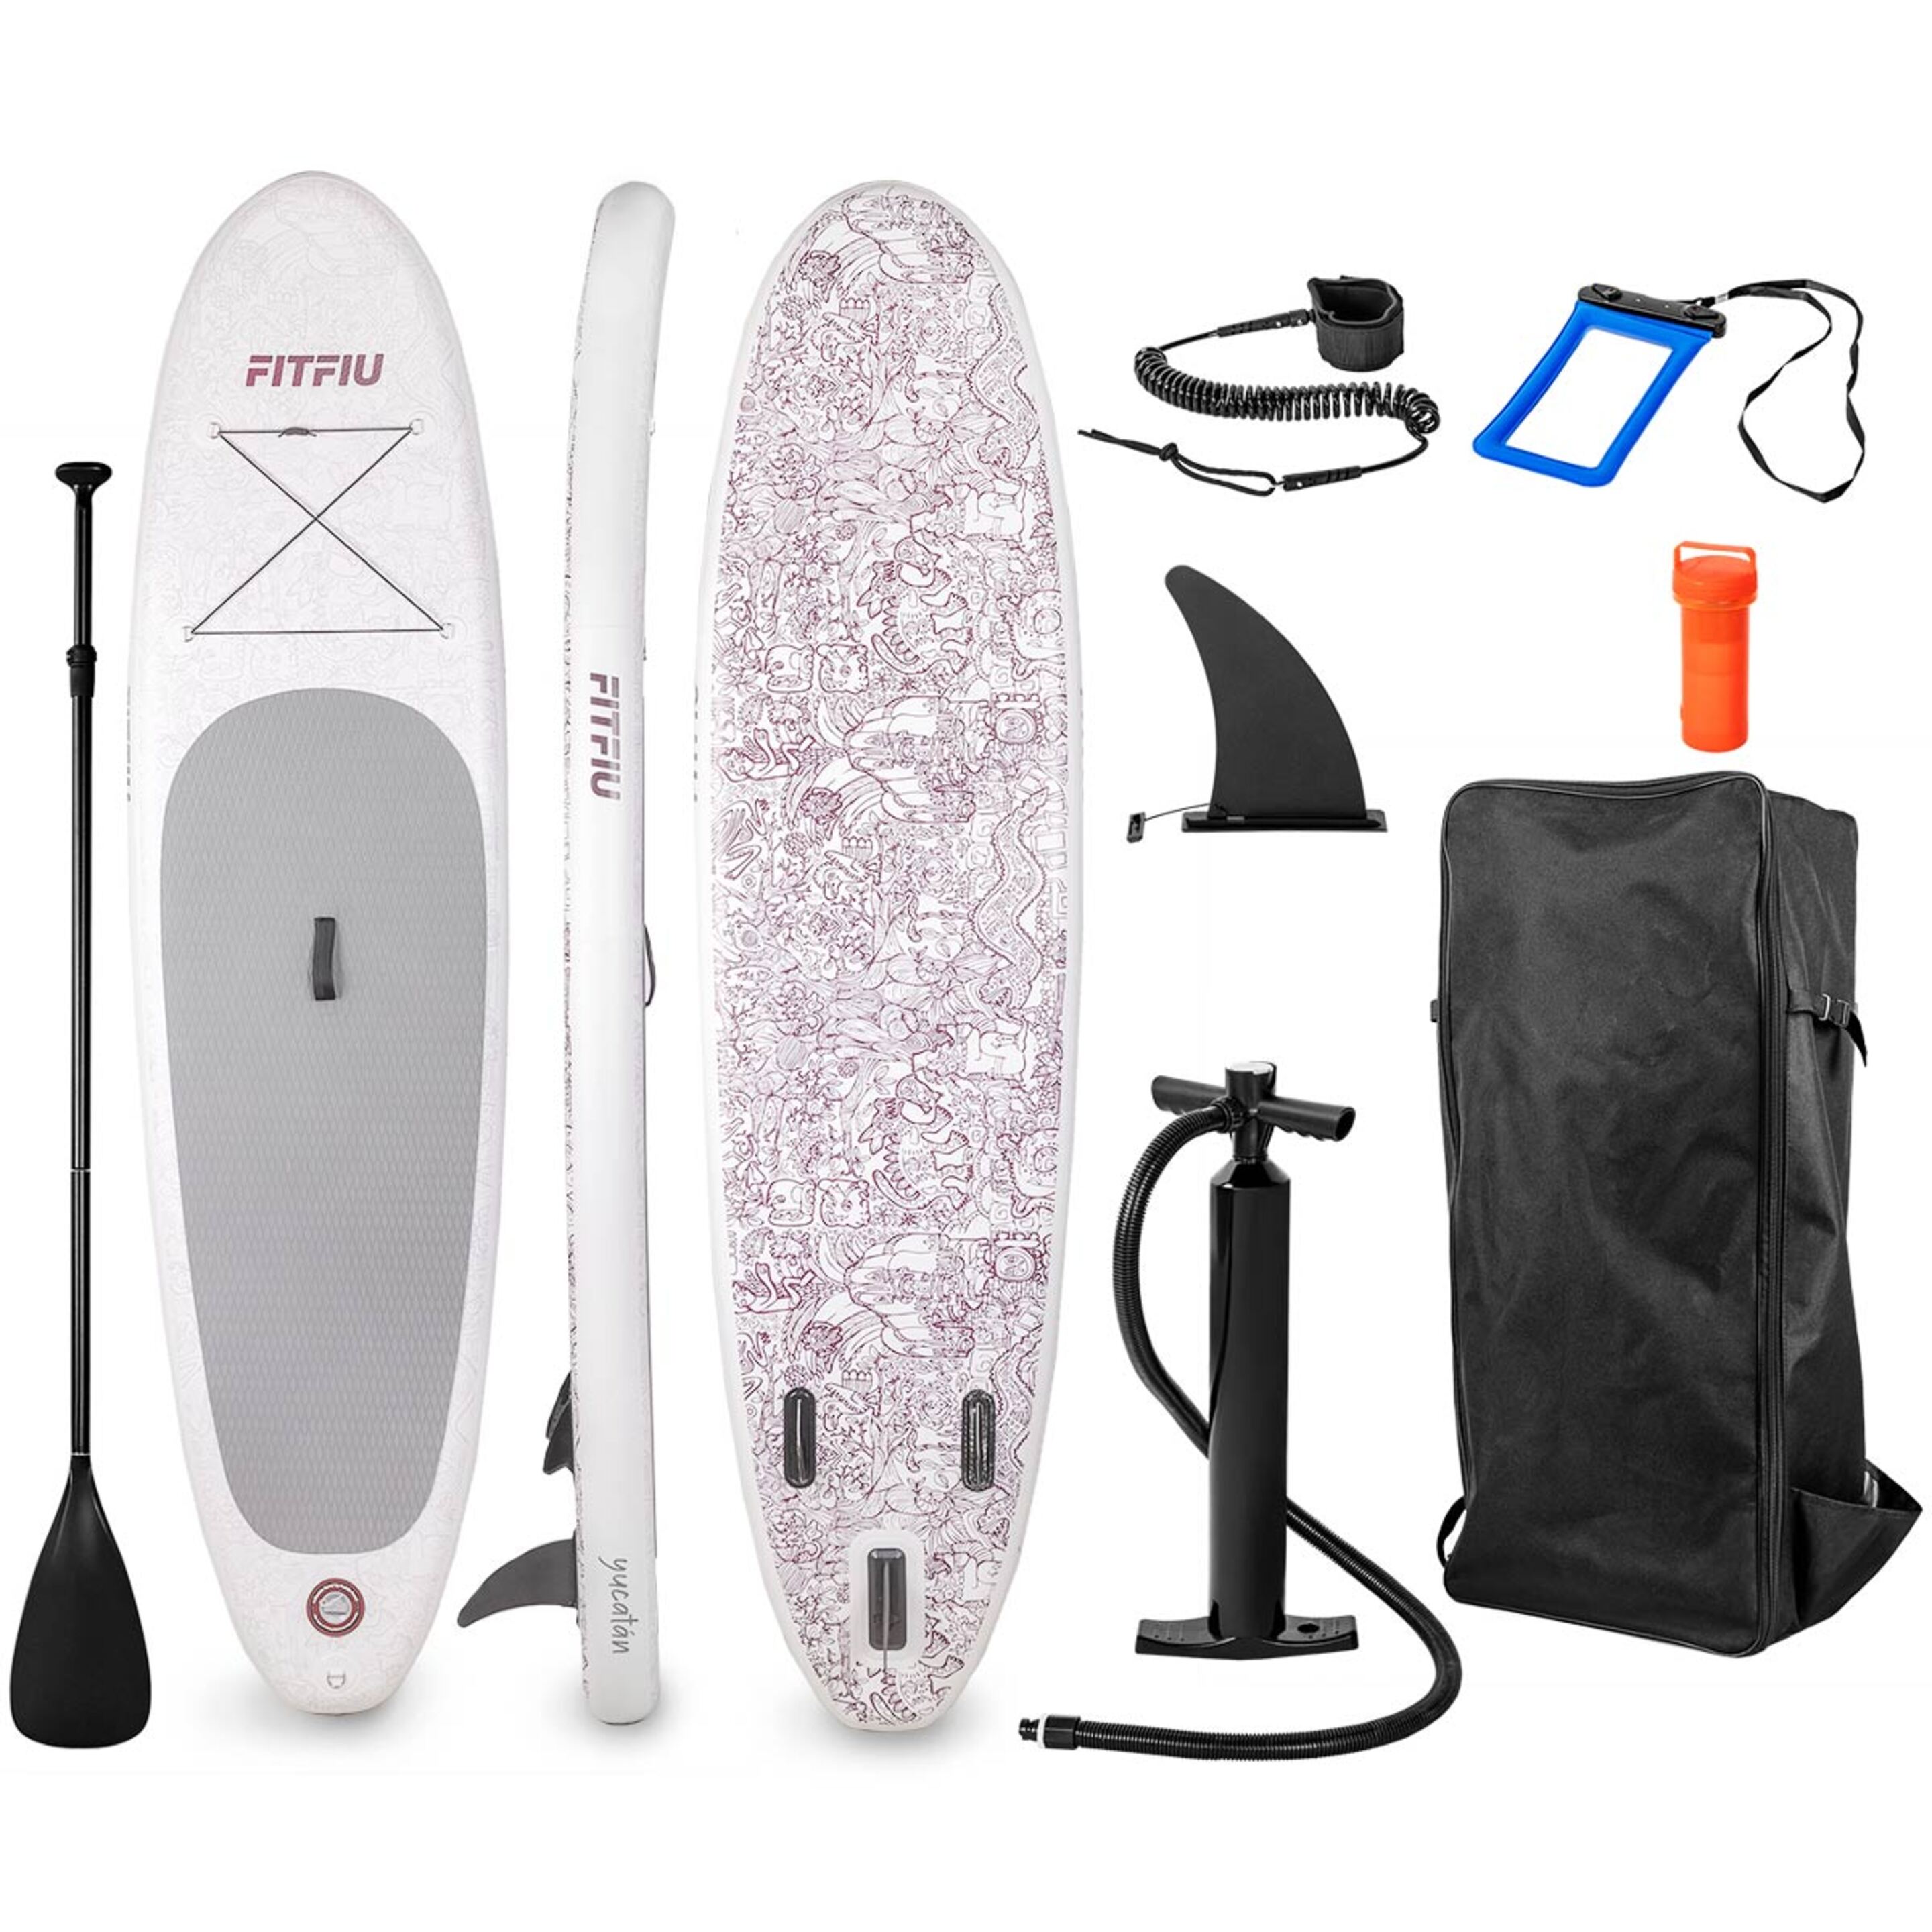 Tabla Paddle Surf Hinchable Fitfiu Especial Yoga Con Accesorios Y Diseño Tribal